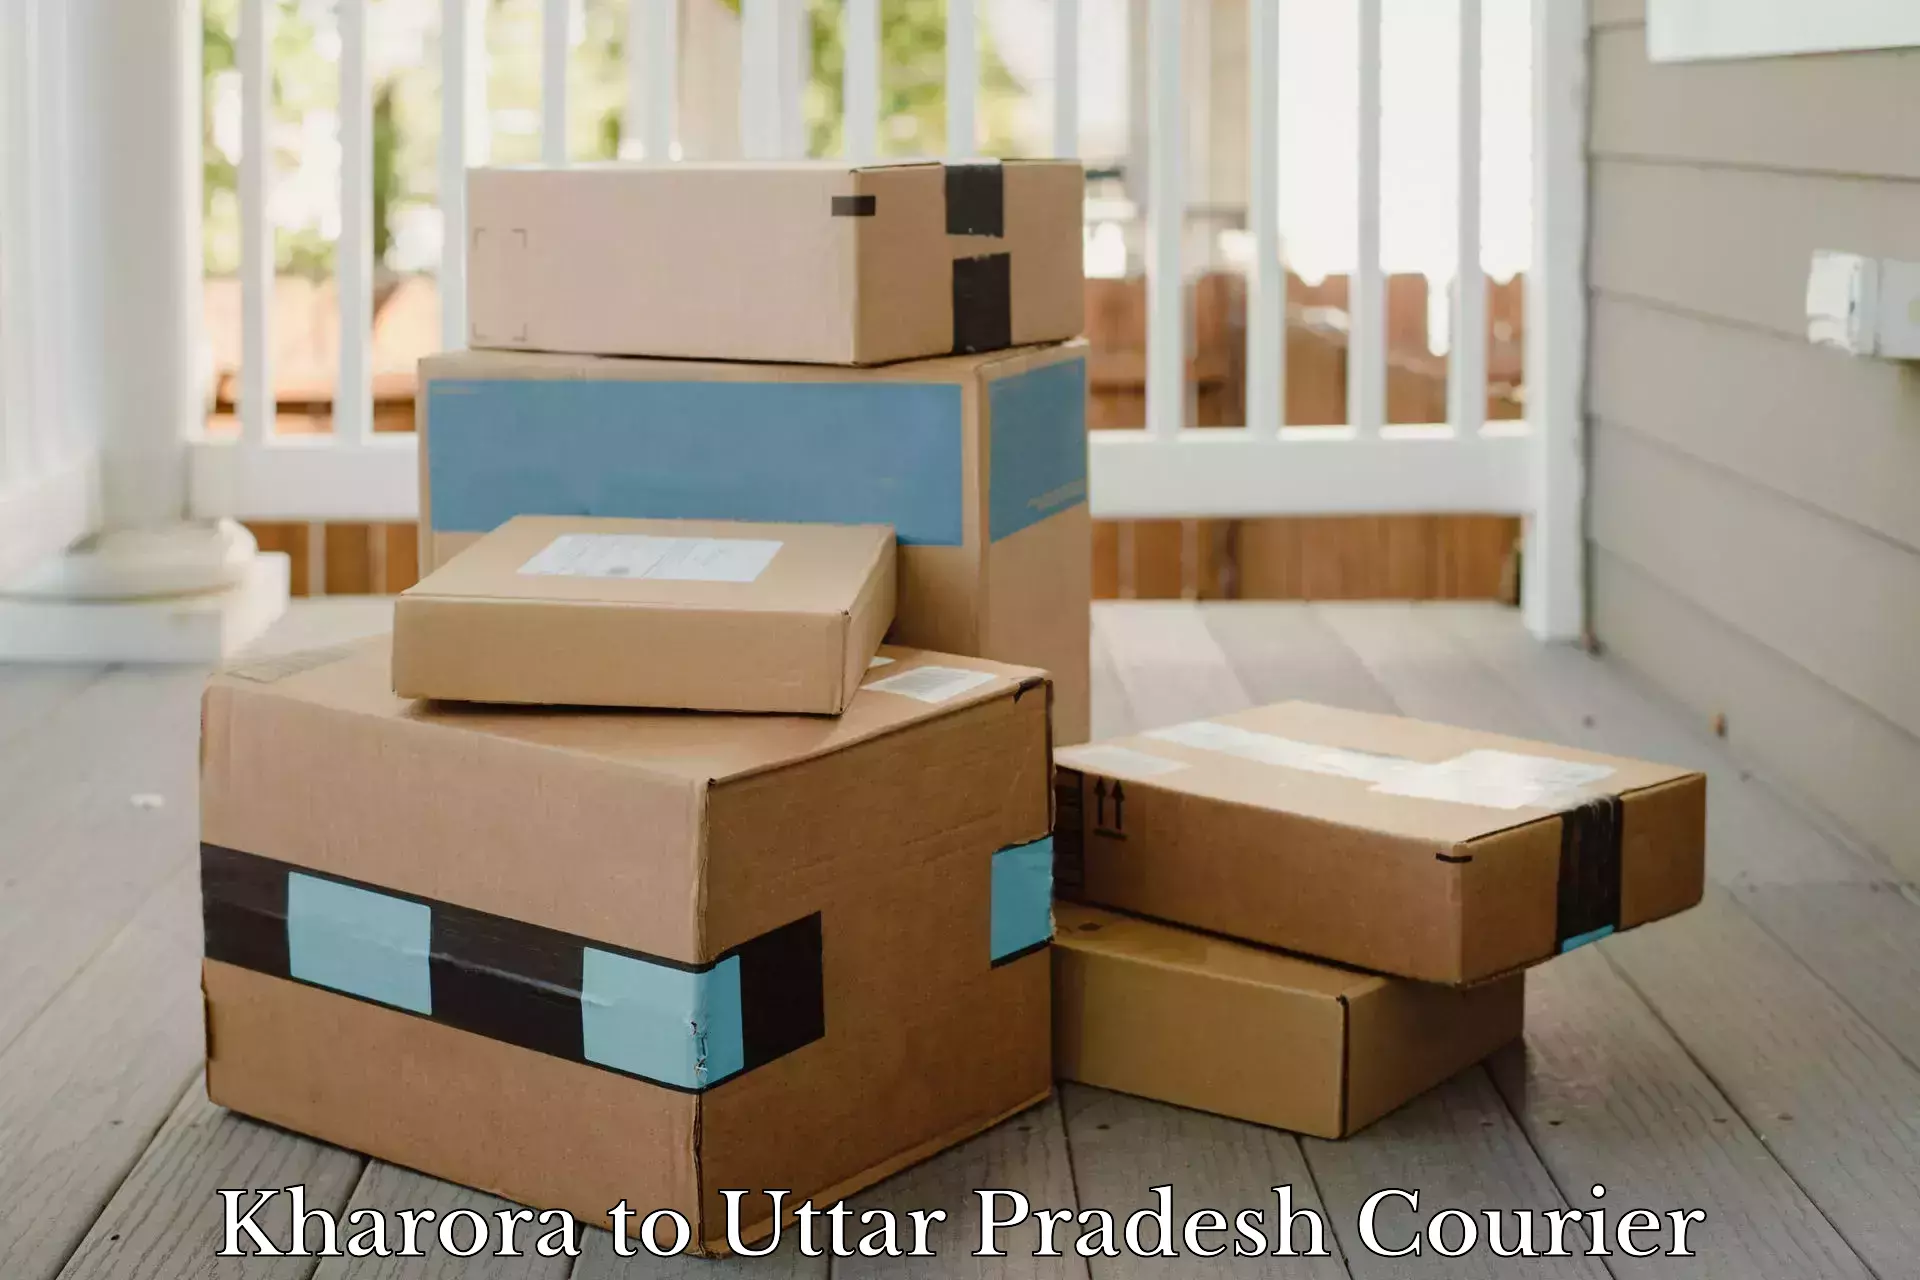 Urgent courier needs in Kharora to Bahraich